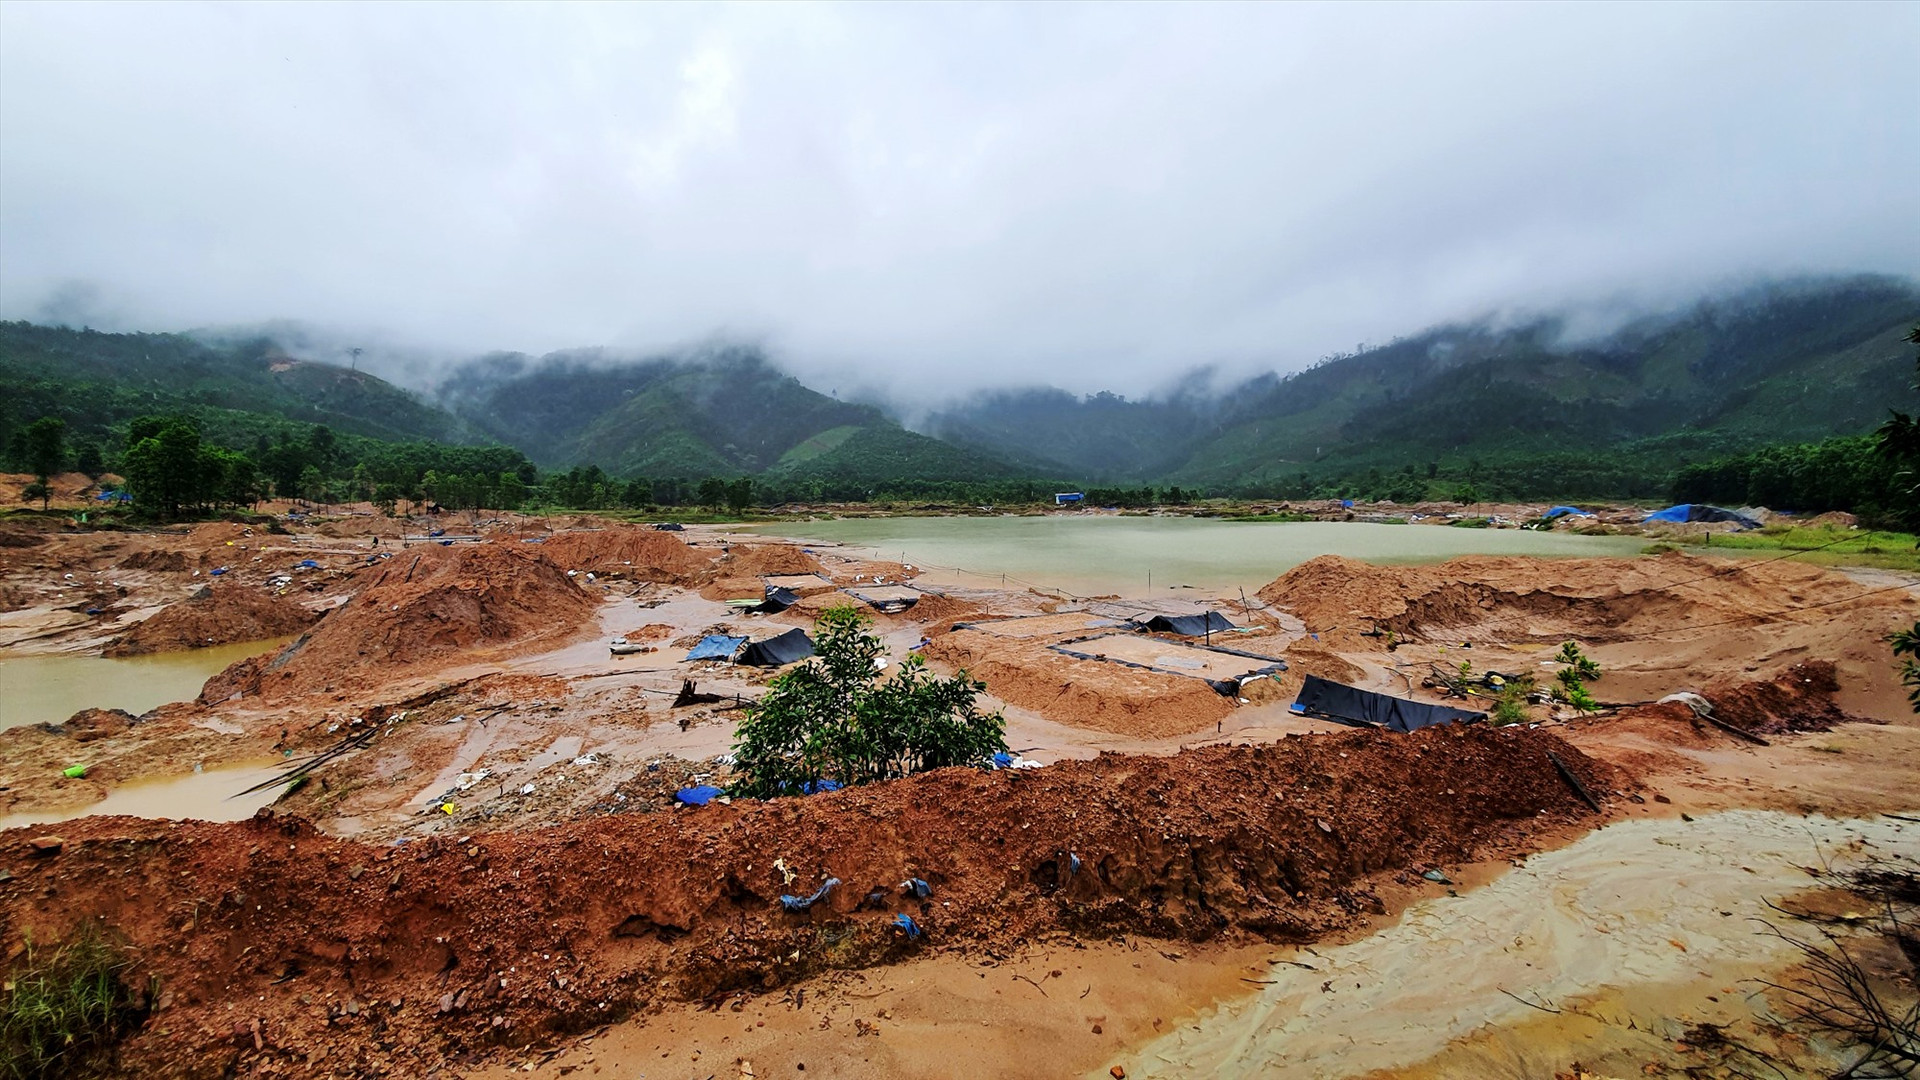 Khu vực bãi thải của mỏ vàng Bồng Miêu vẫn tái diễn tình trạng khai thác vàng trái phép dù cơ quan chức năng liên tục truy quét, đẩy đuổi. Ảnh: T.C